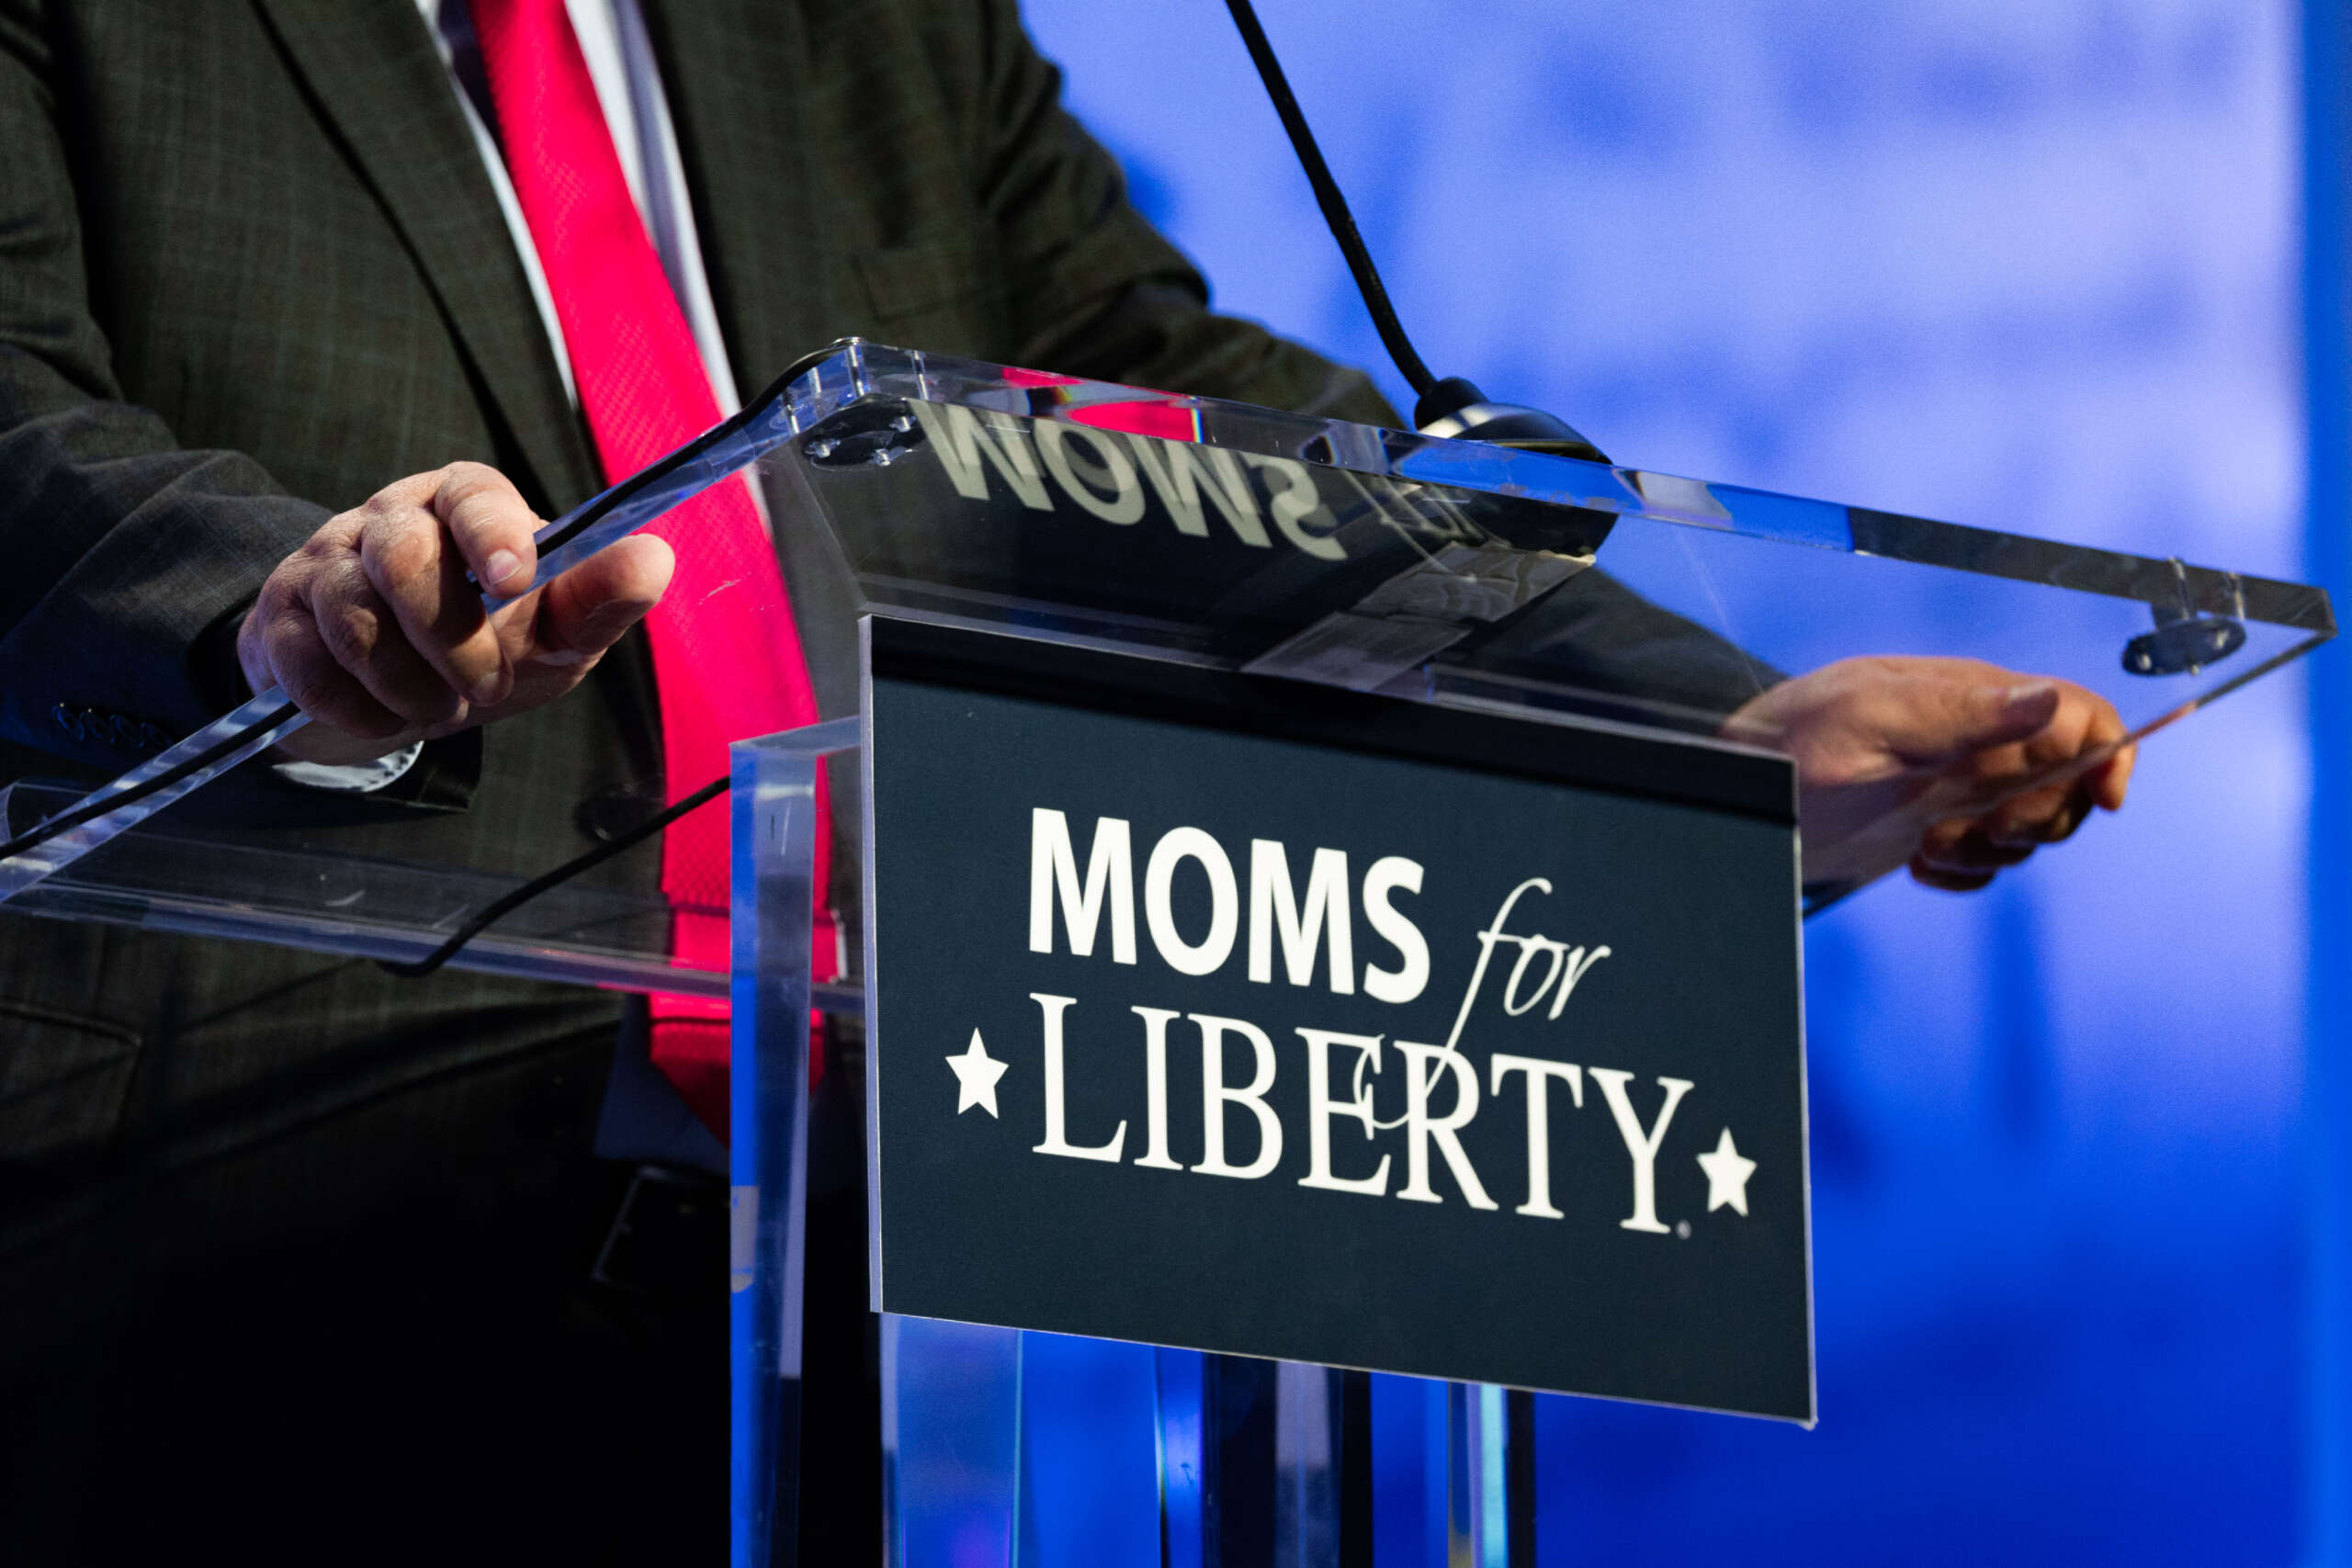 Les mamans pour la liberté et les républicains anti-trans perdent gros aux élections nationales